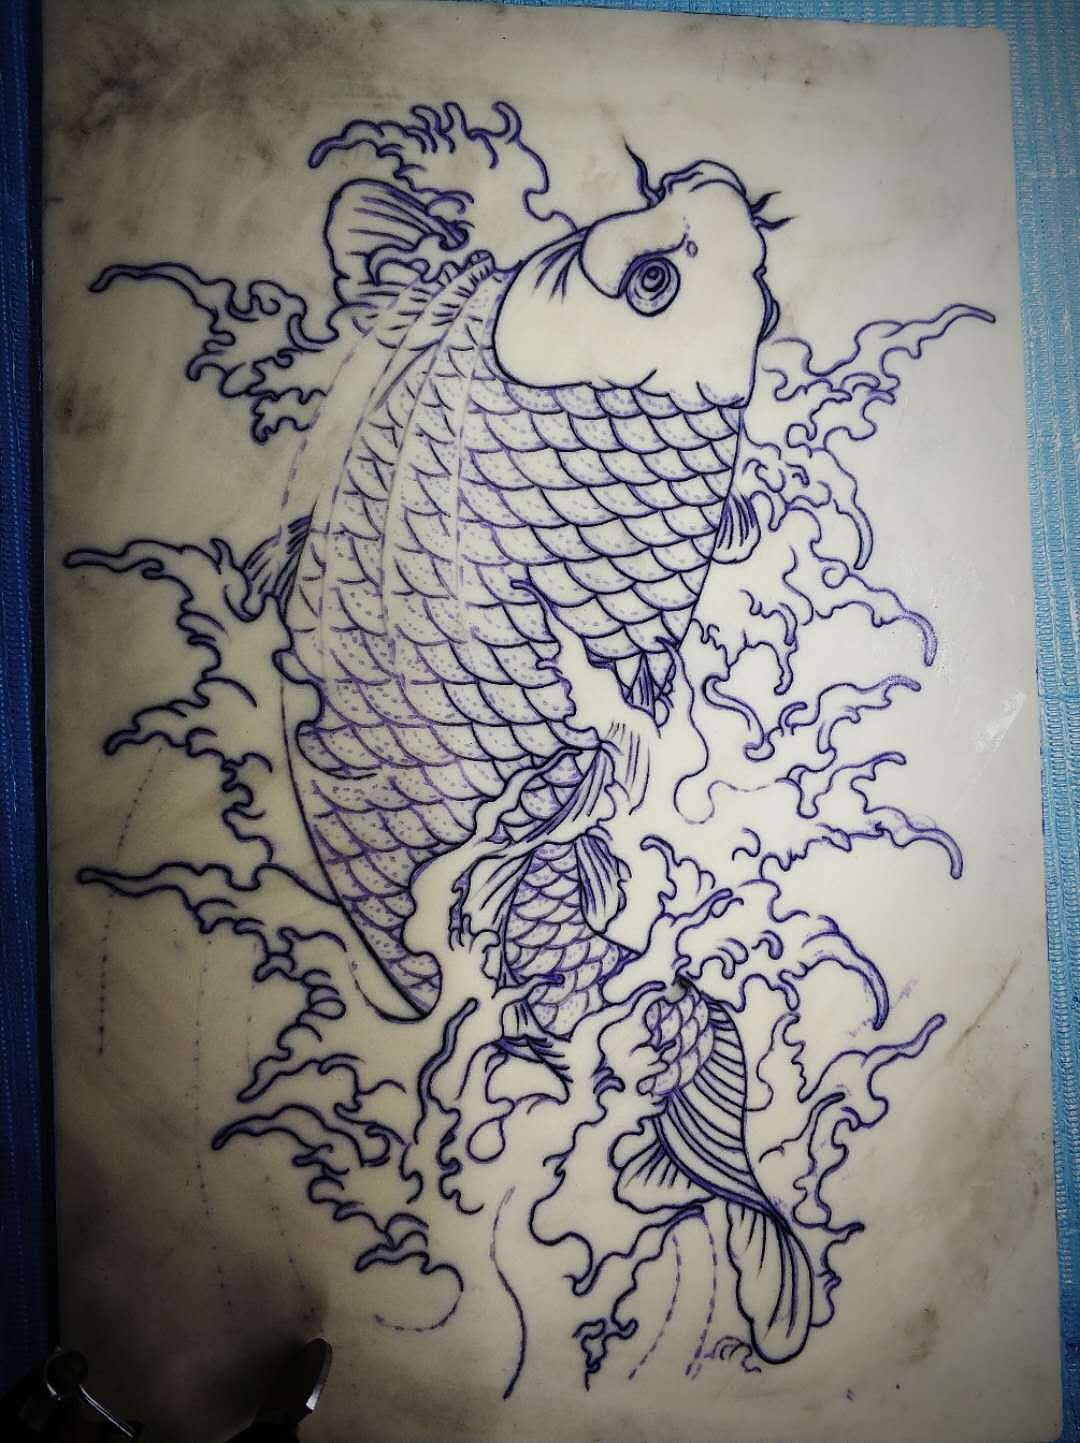 大臂鲤鱼刺青图案作品遮盖旧纹身